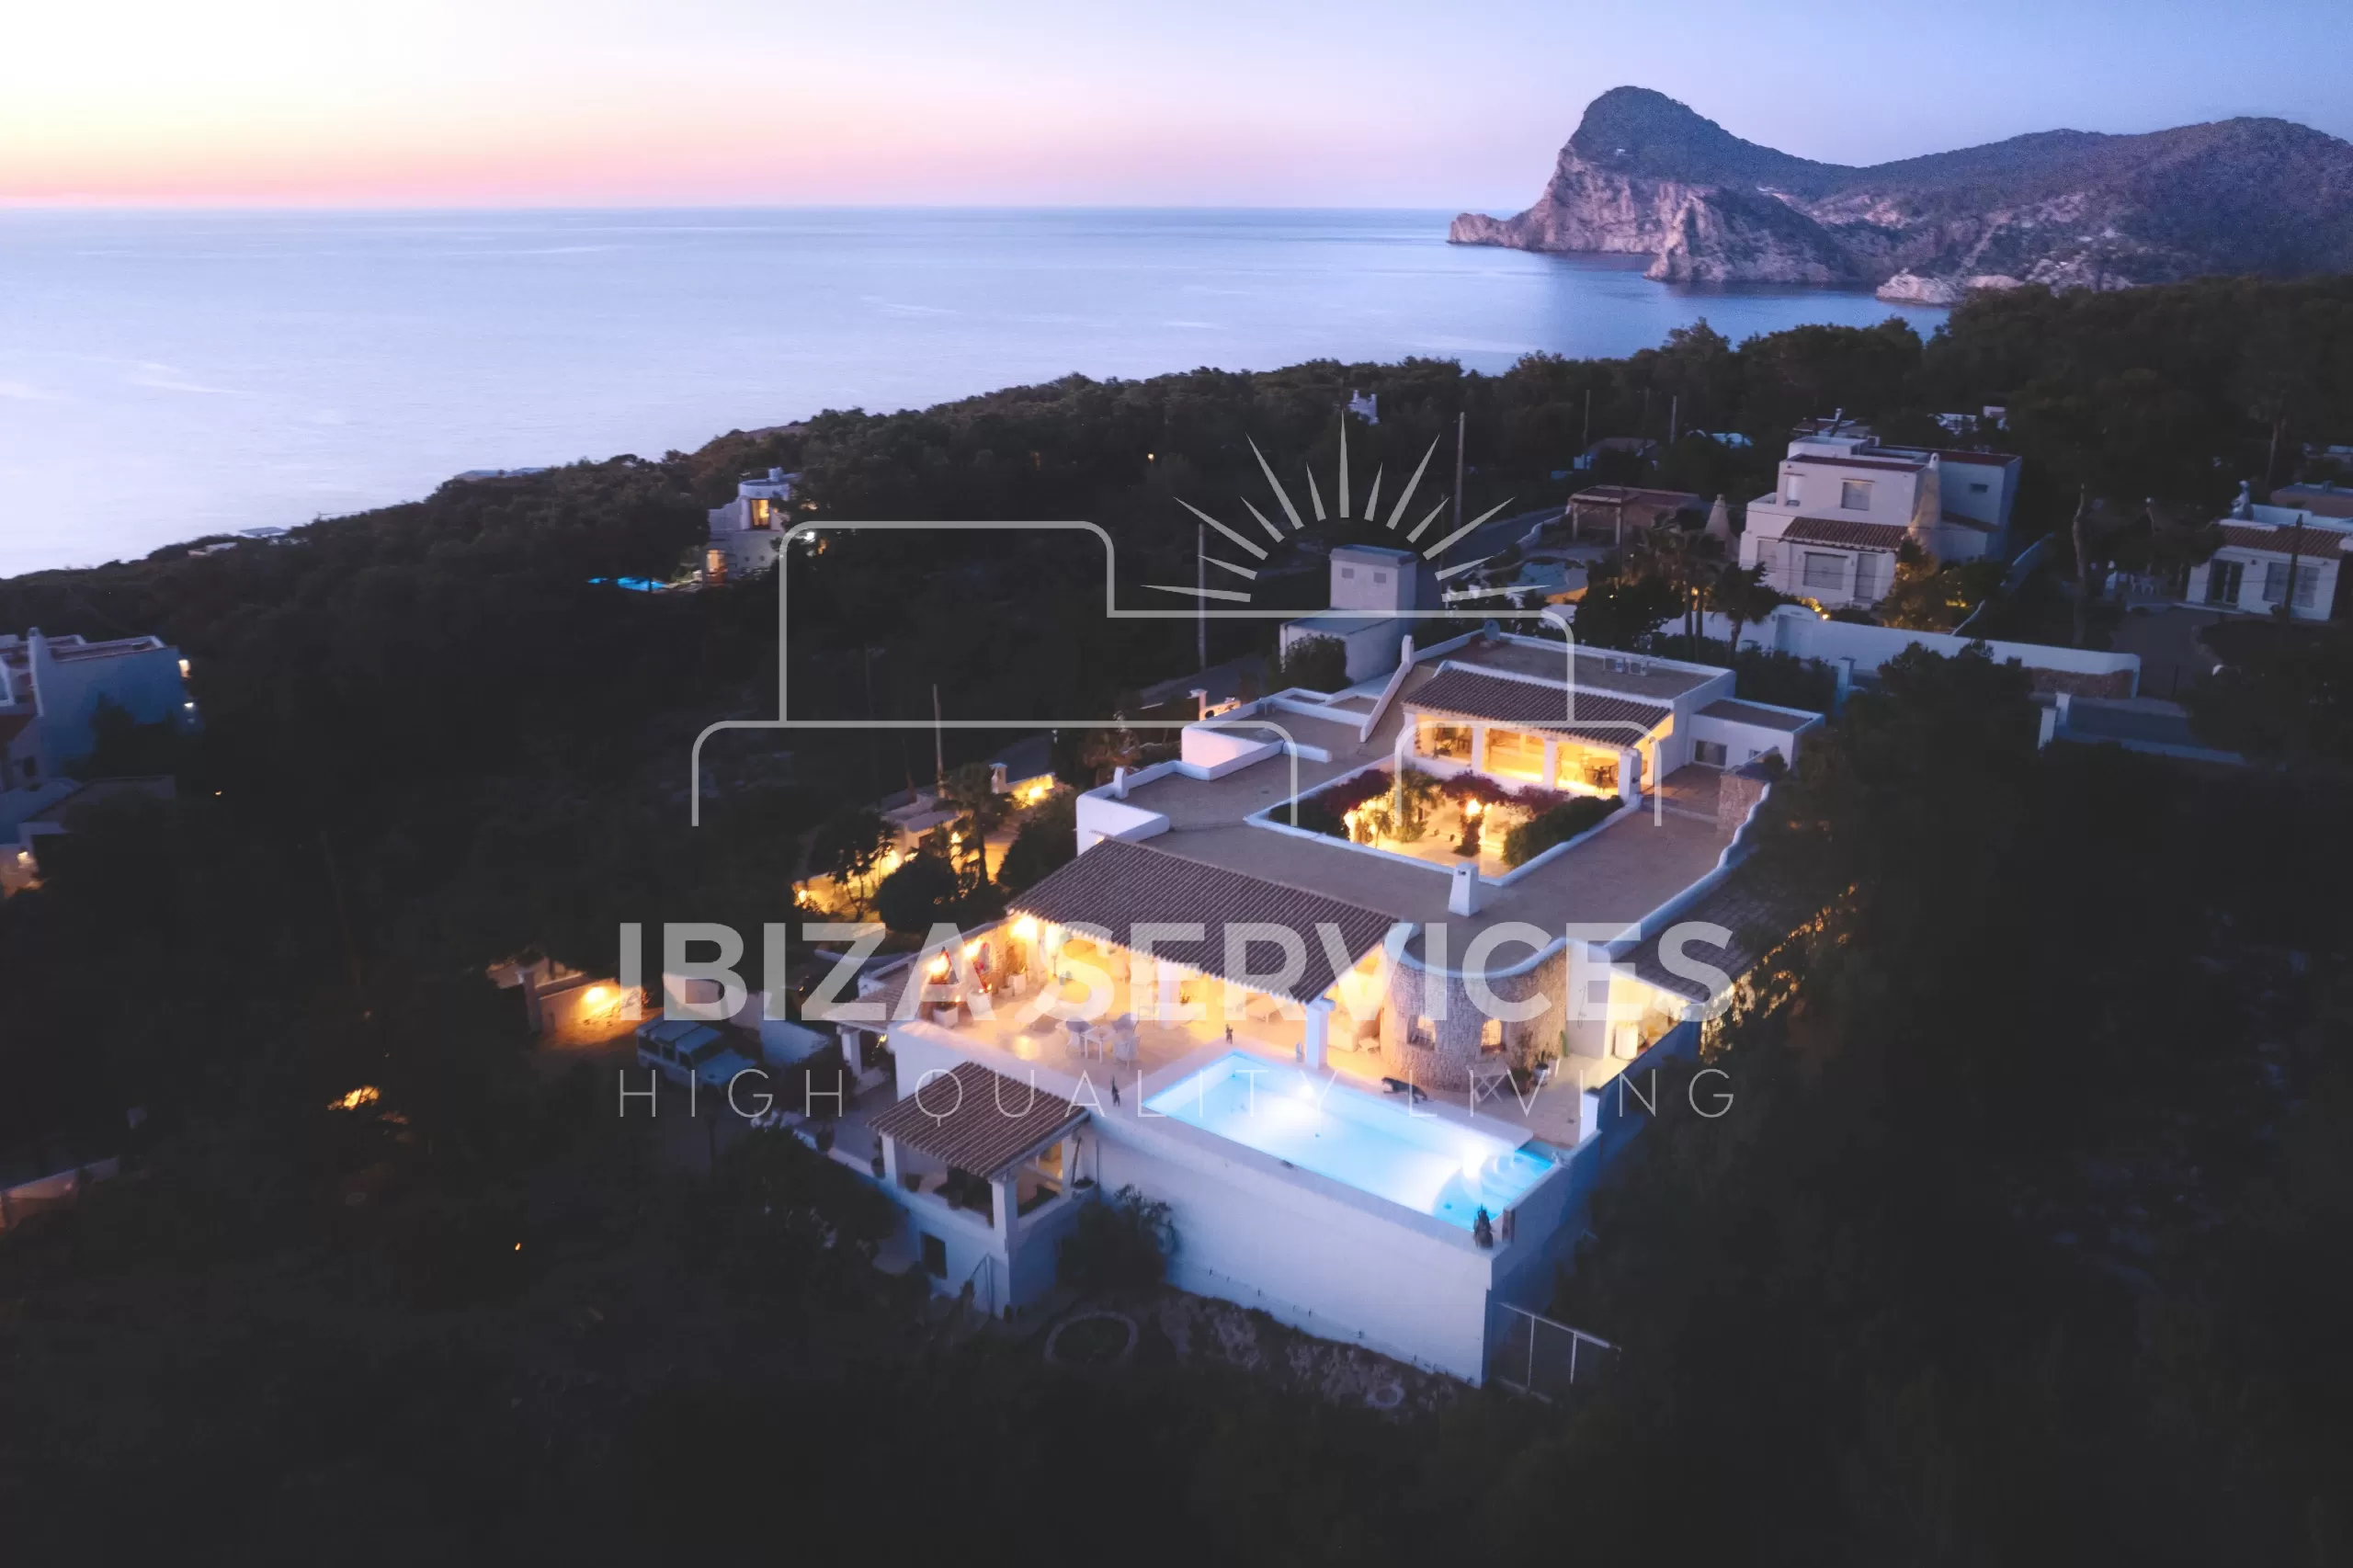 Betoverende villa met groot zwembad en prachtig uitzicht op zee en zonsondergang te koop.